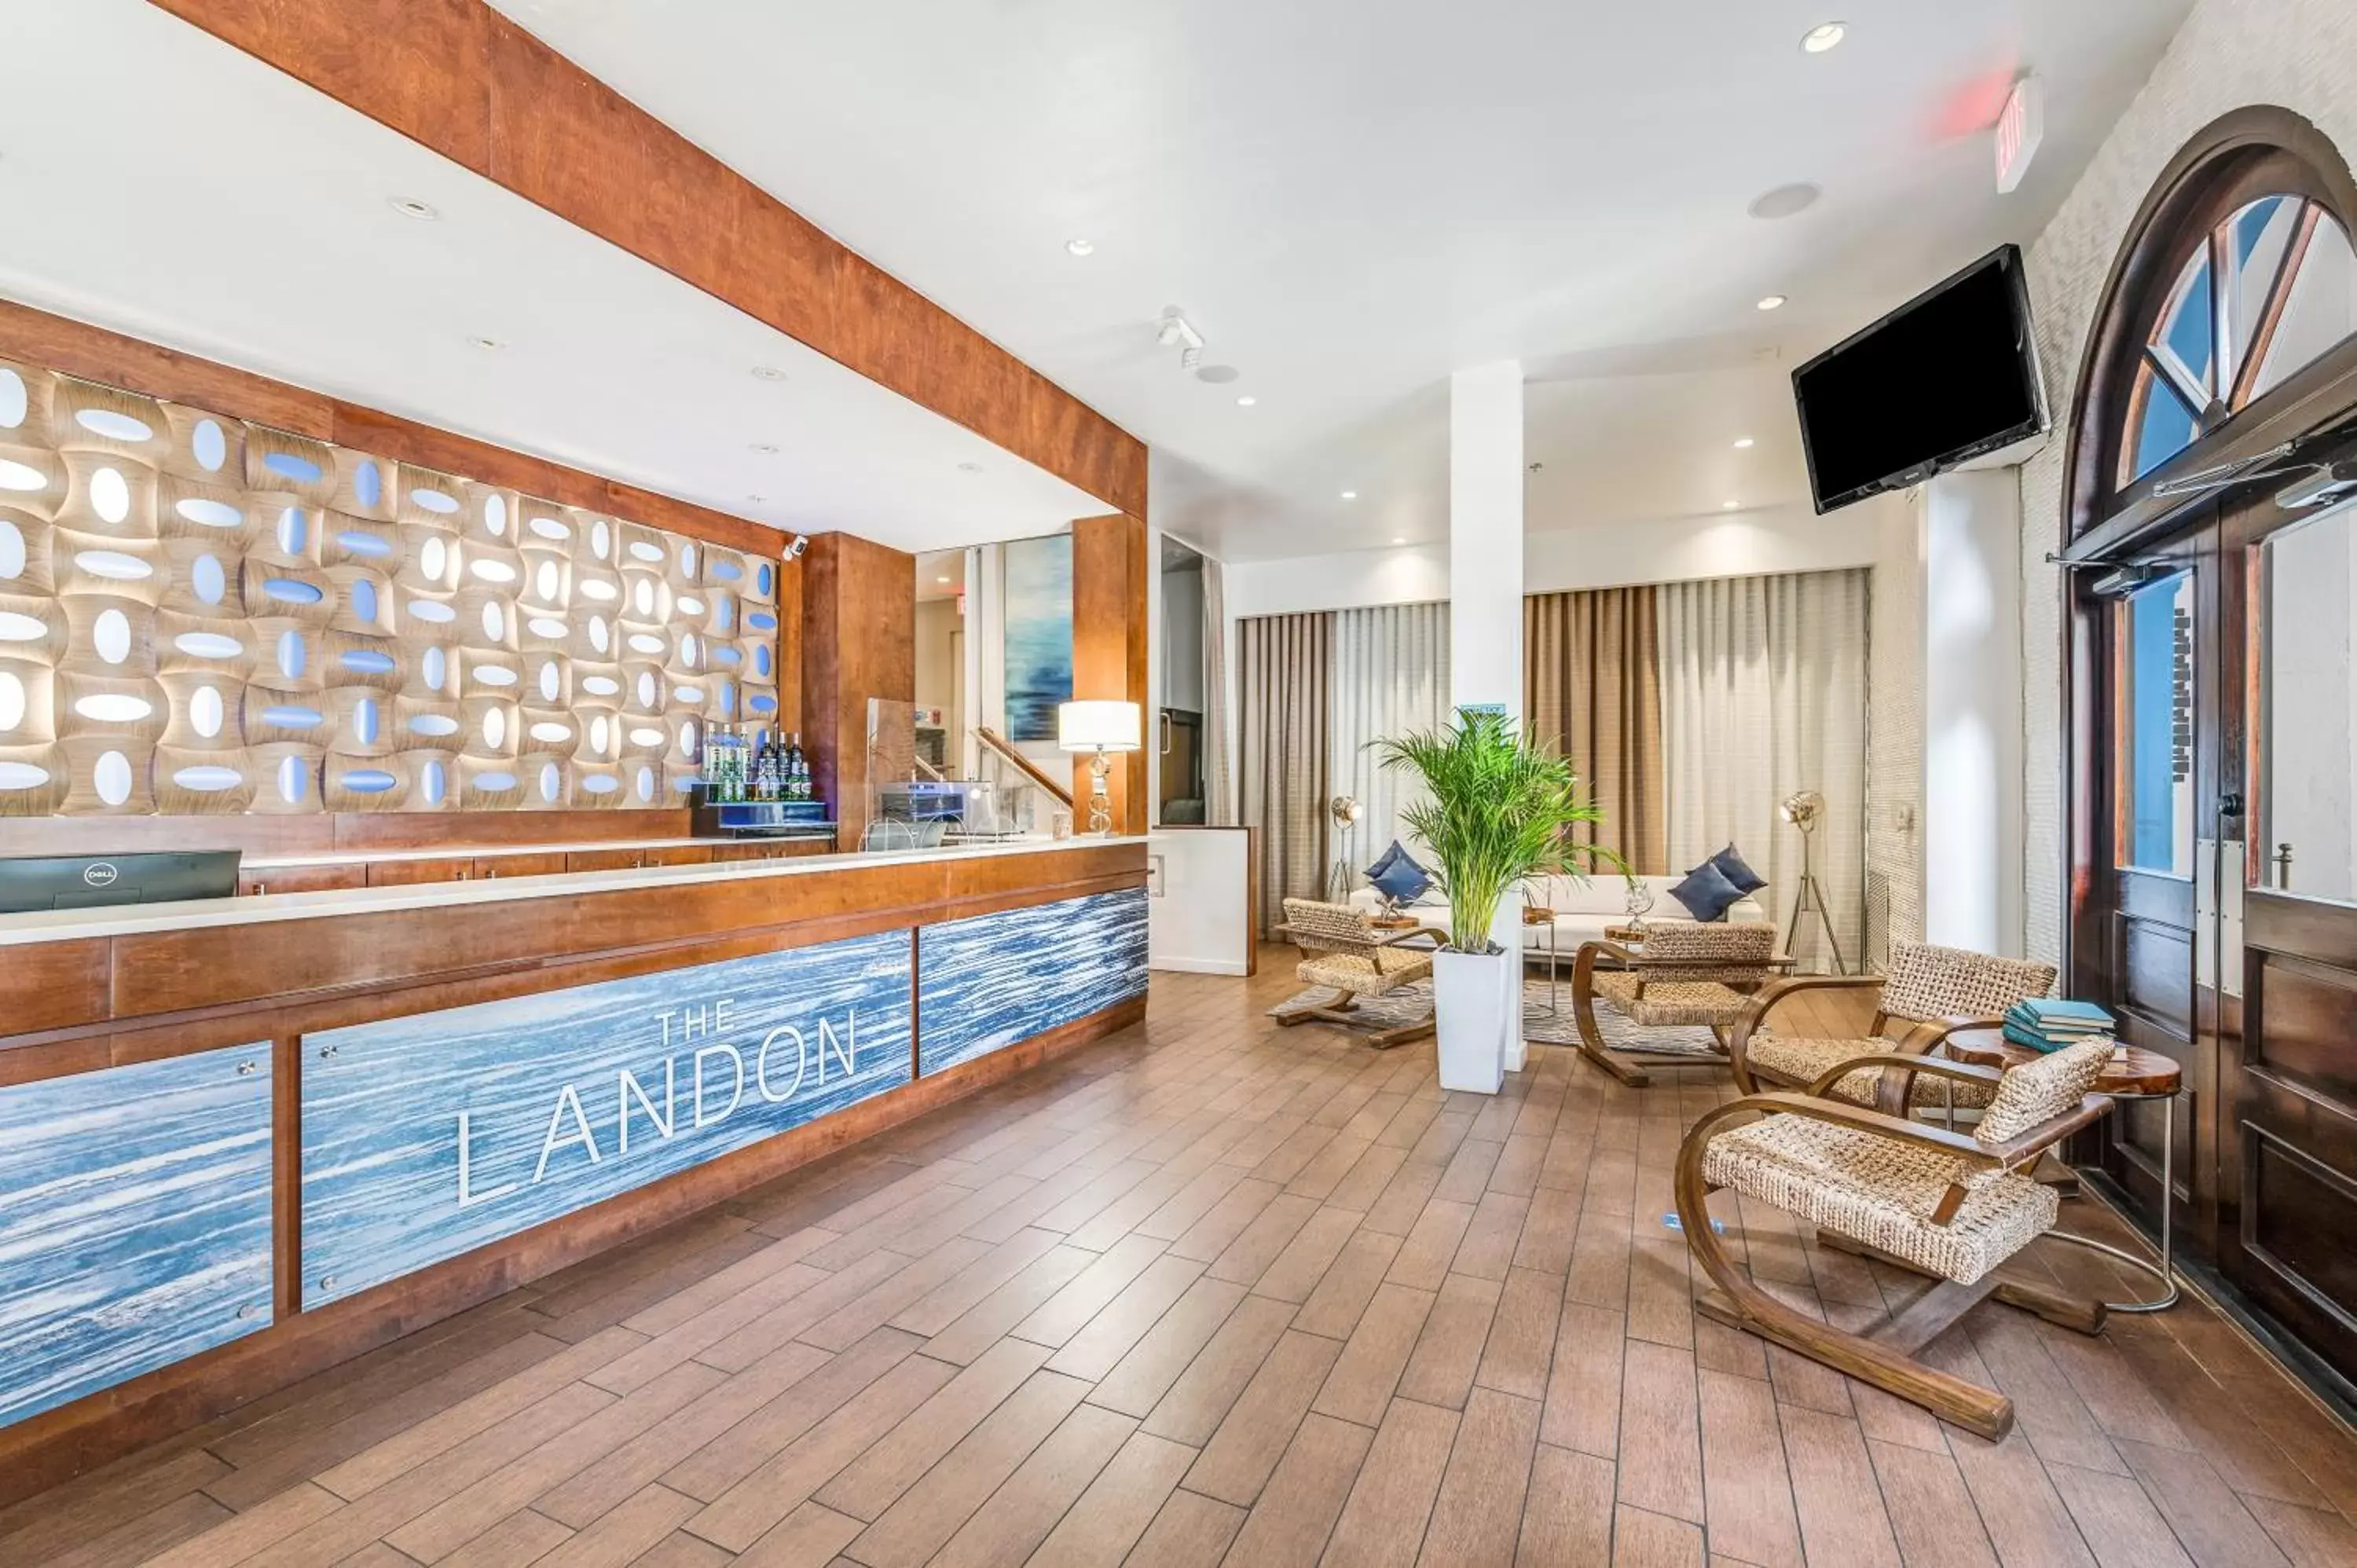 Lobby or reception, Lobby/Reception in The Landon Bay Harbor-Miami Beach